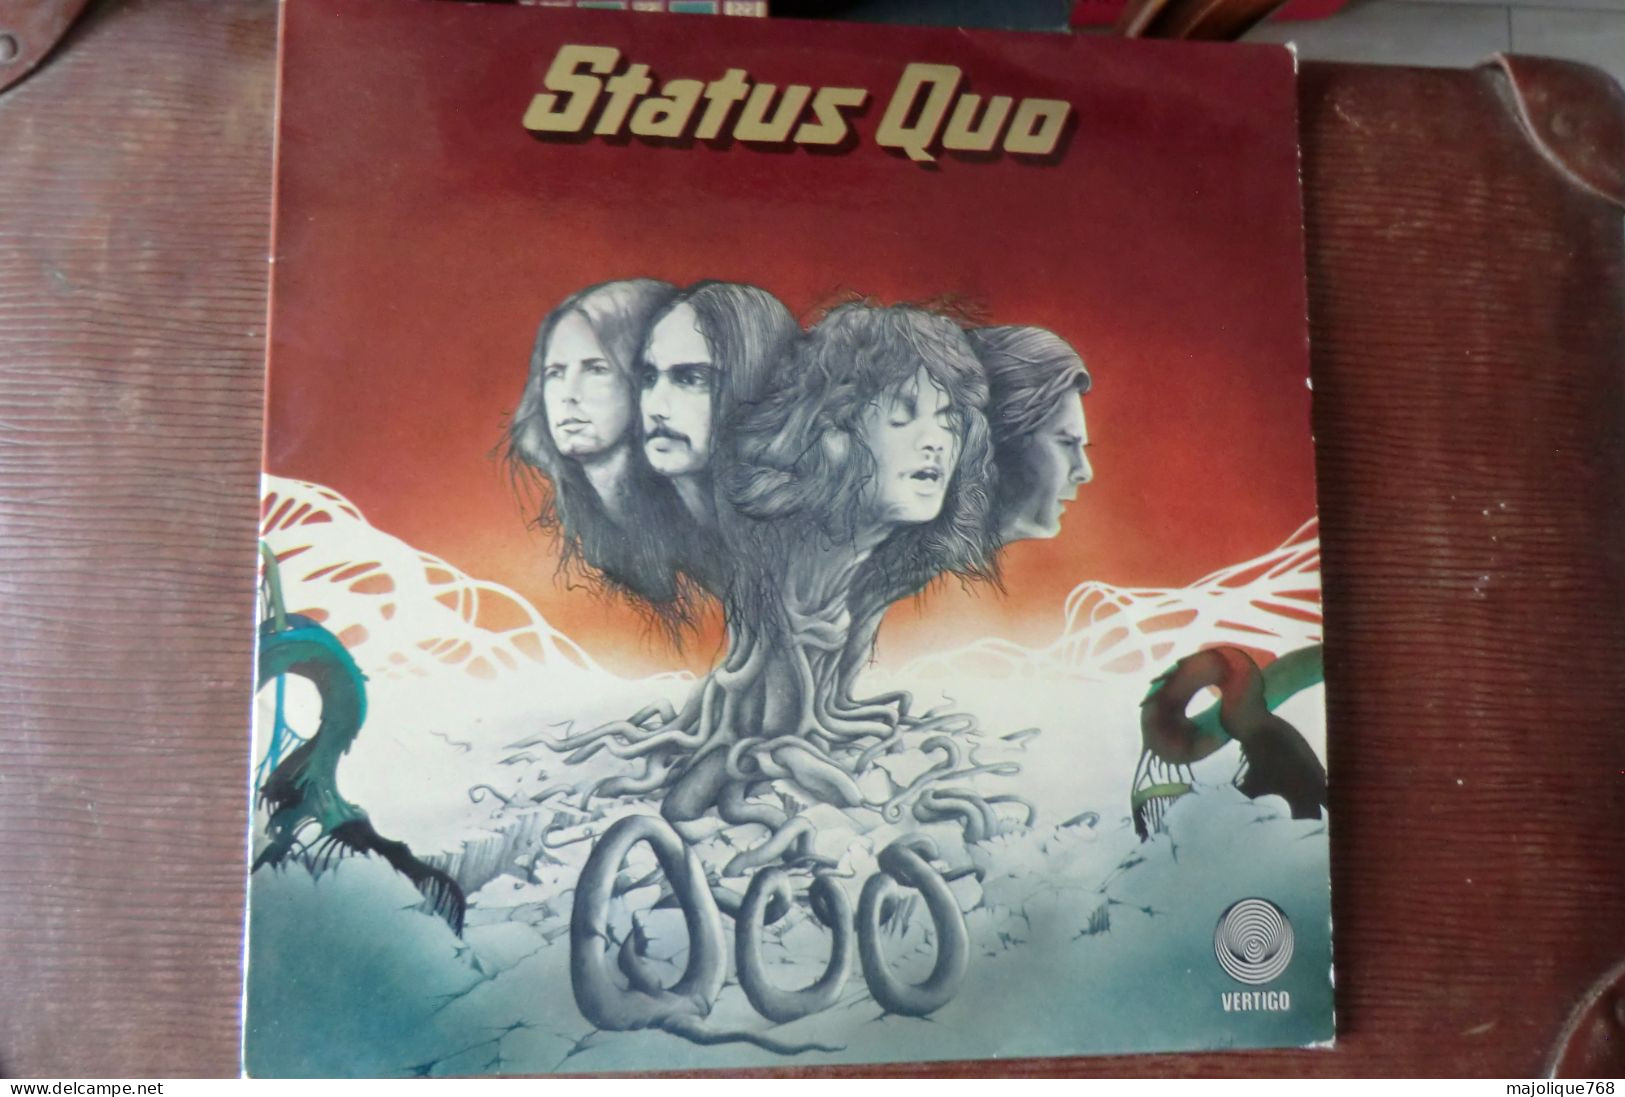 Disque De Status Quo - Quo - Vertigo 9102 001 - France 1974 - Rock